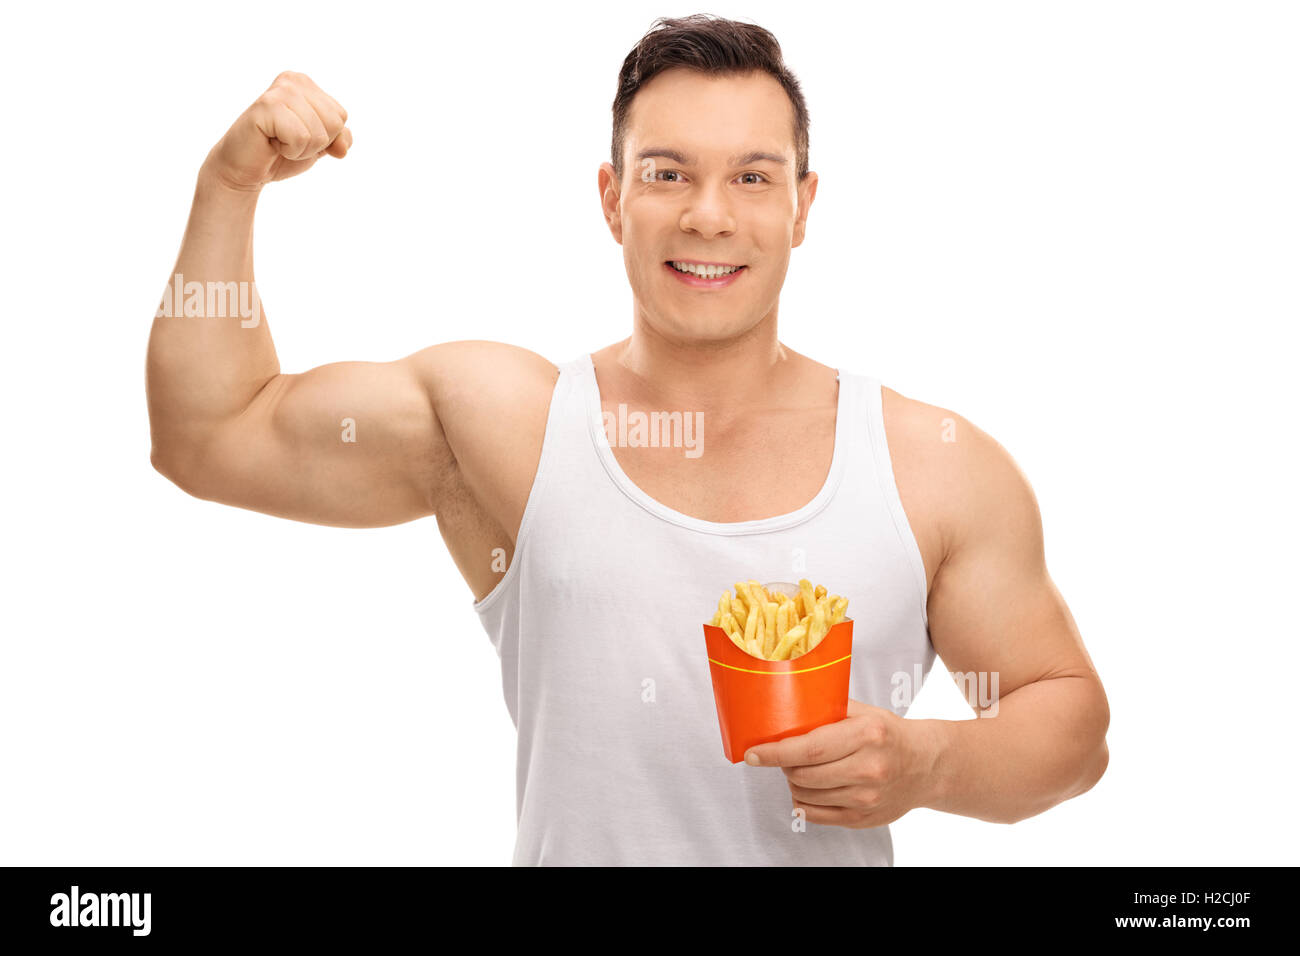 Allegro ragazzo flettendo il suo bicipite e tenendo un sacchetto di patatine fritte isolati su sfondo bianco Foto Stock